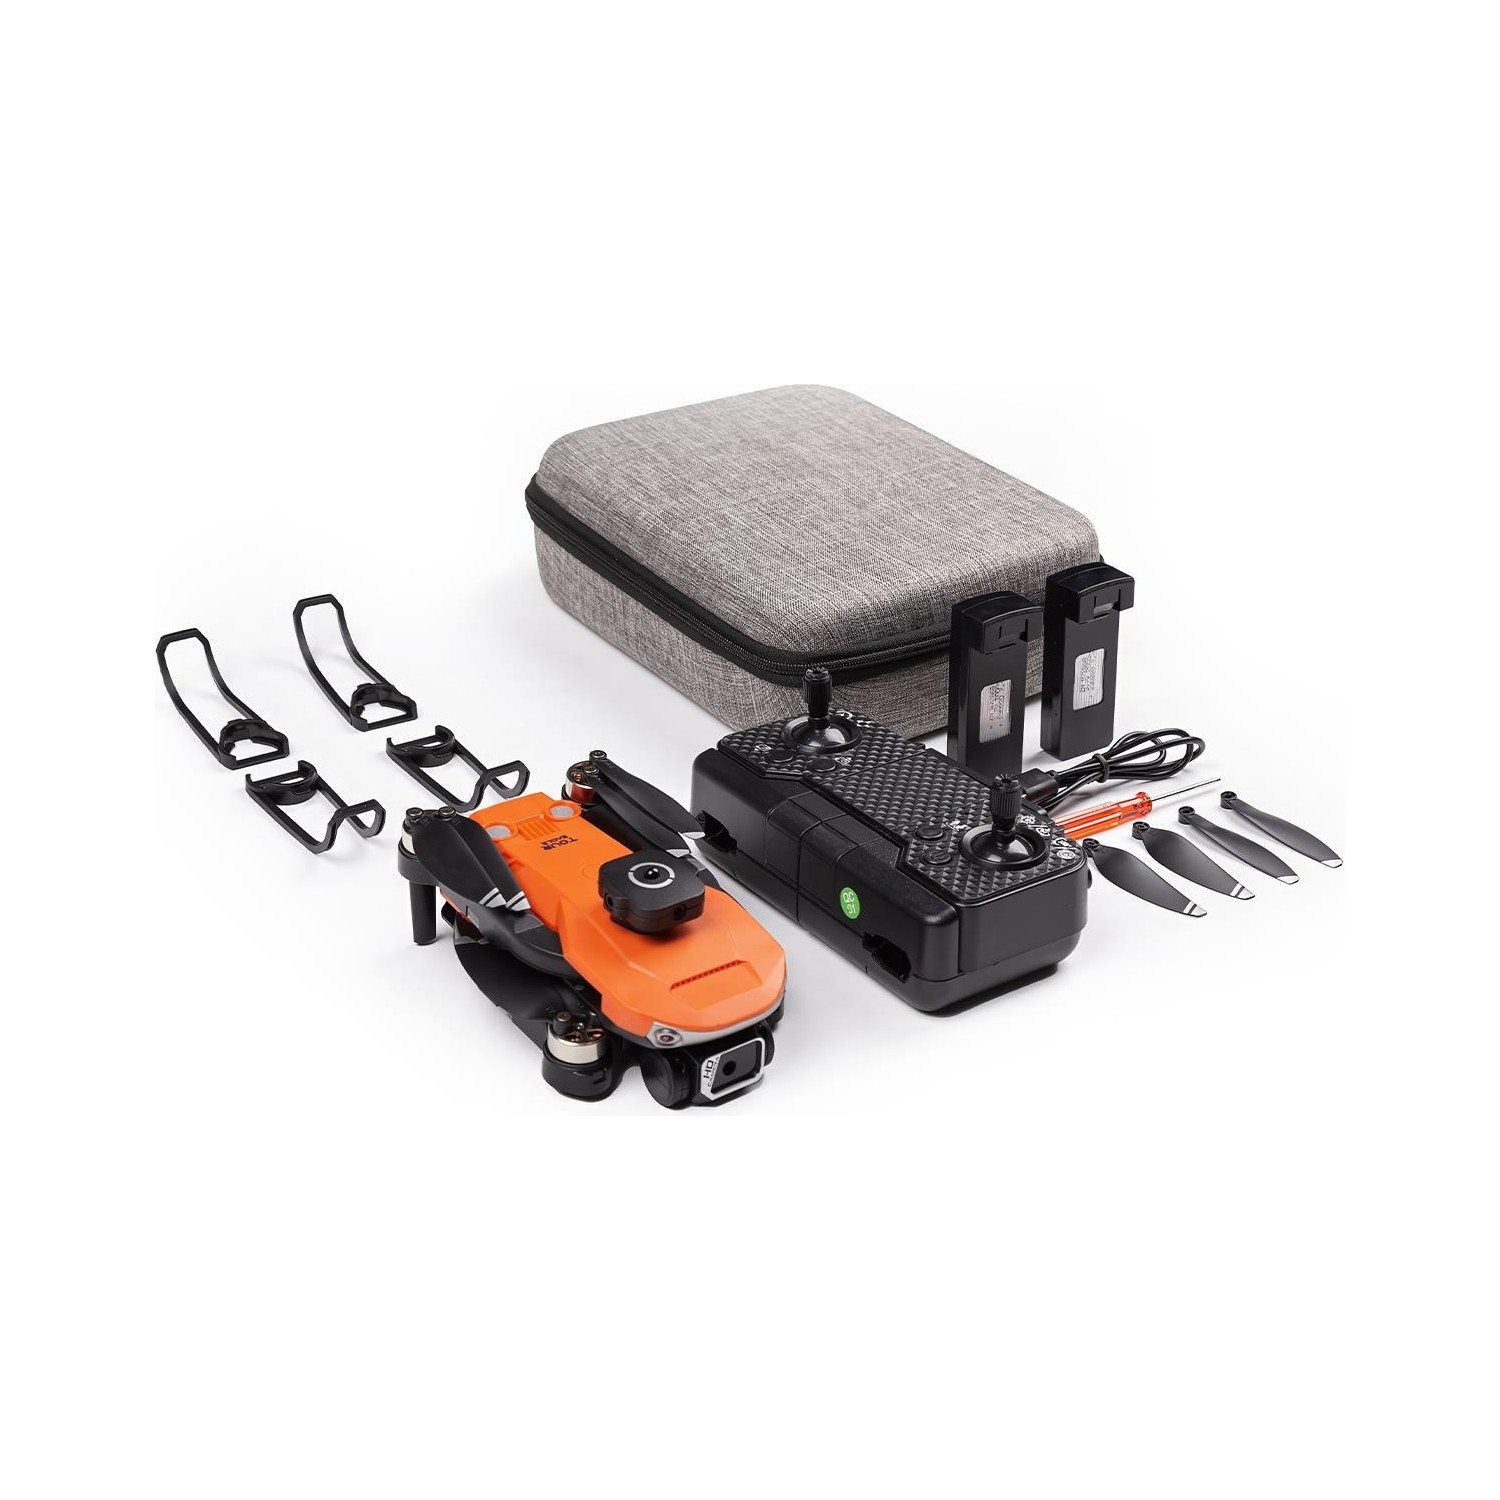 Aden Evo 2 Bataryalı Taşıma Çantalı Kameralı Drone - Turuncu - 2 Bataryalı Set